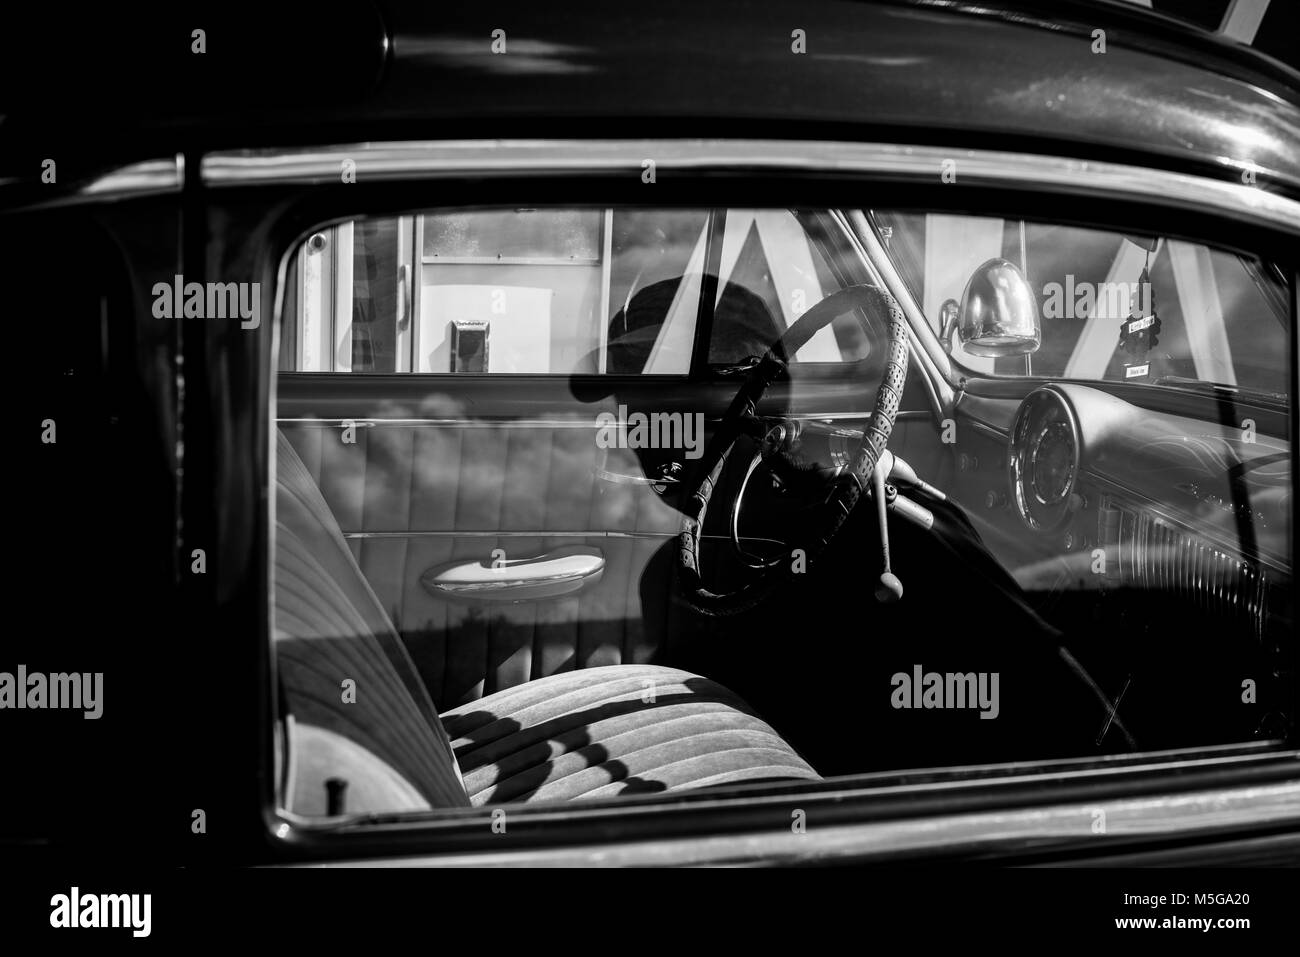 La réflexion monochrome d'un homme dans une voiture Chevrolet vintage. Banque D'Images